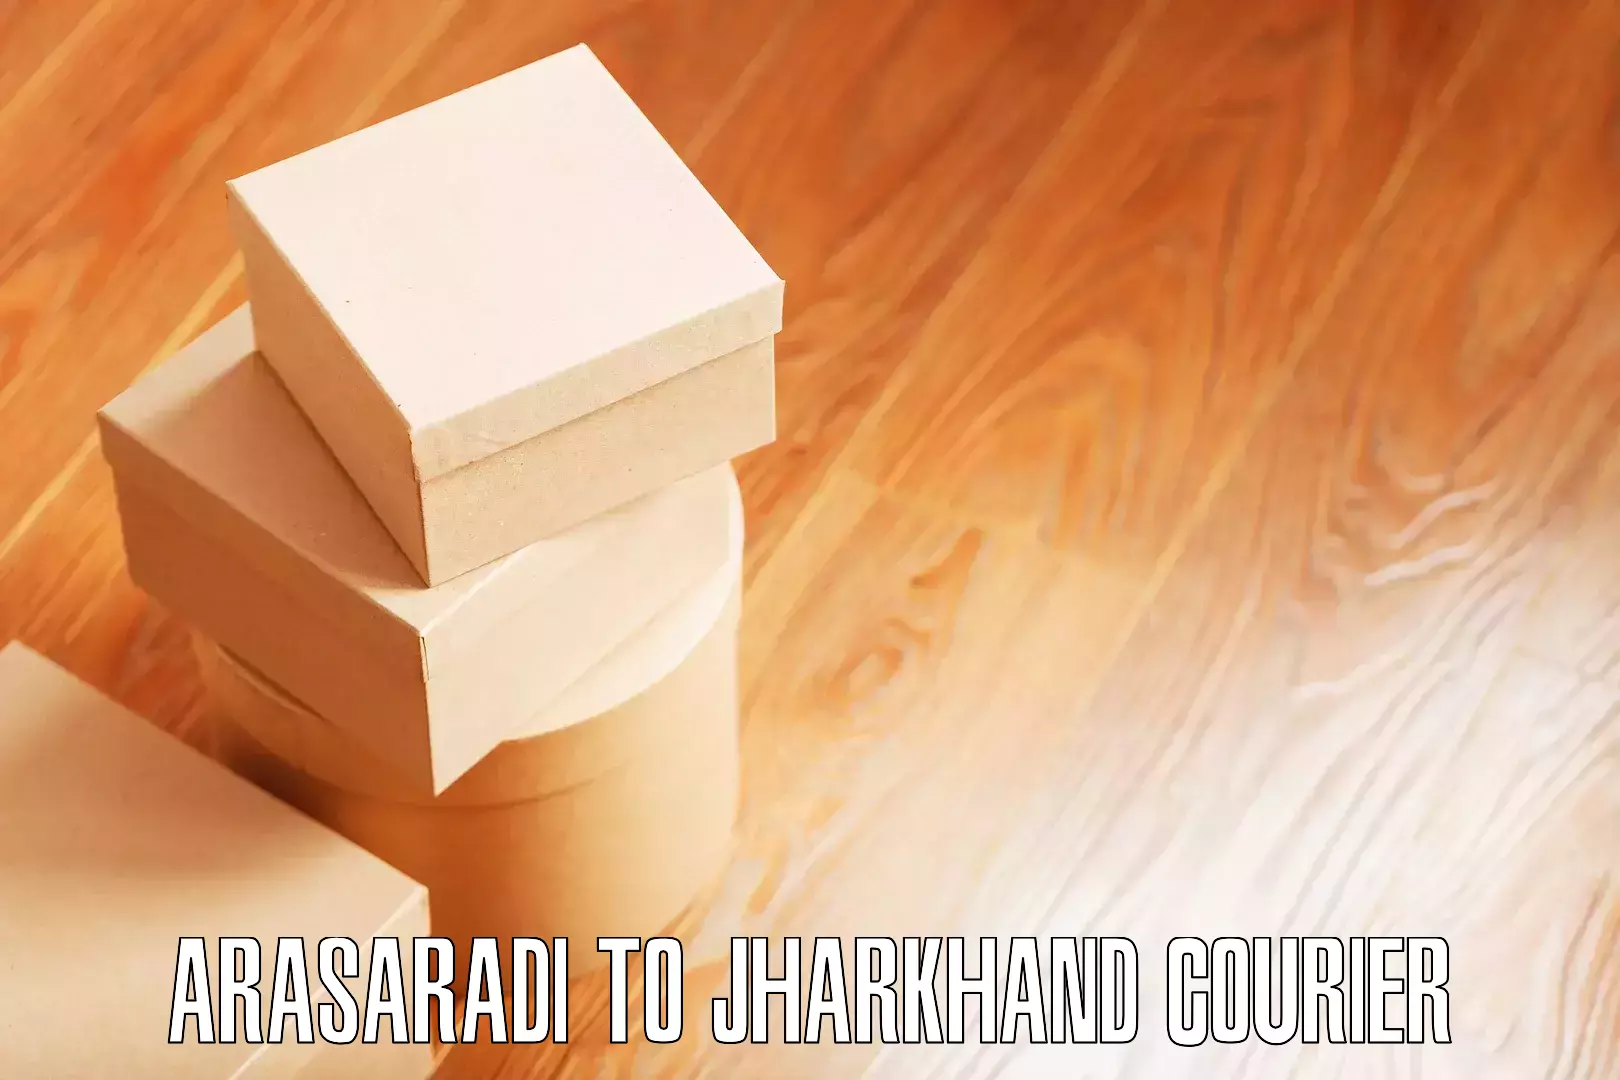 Furniture moving assistance Arasaradi to Garhwa